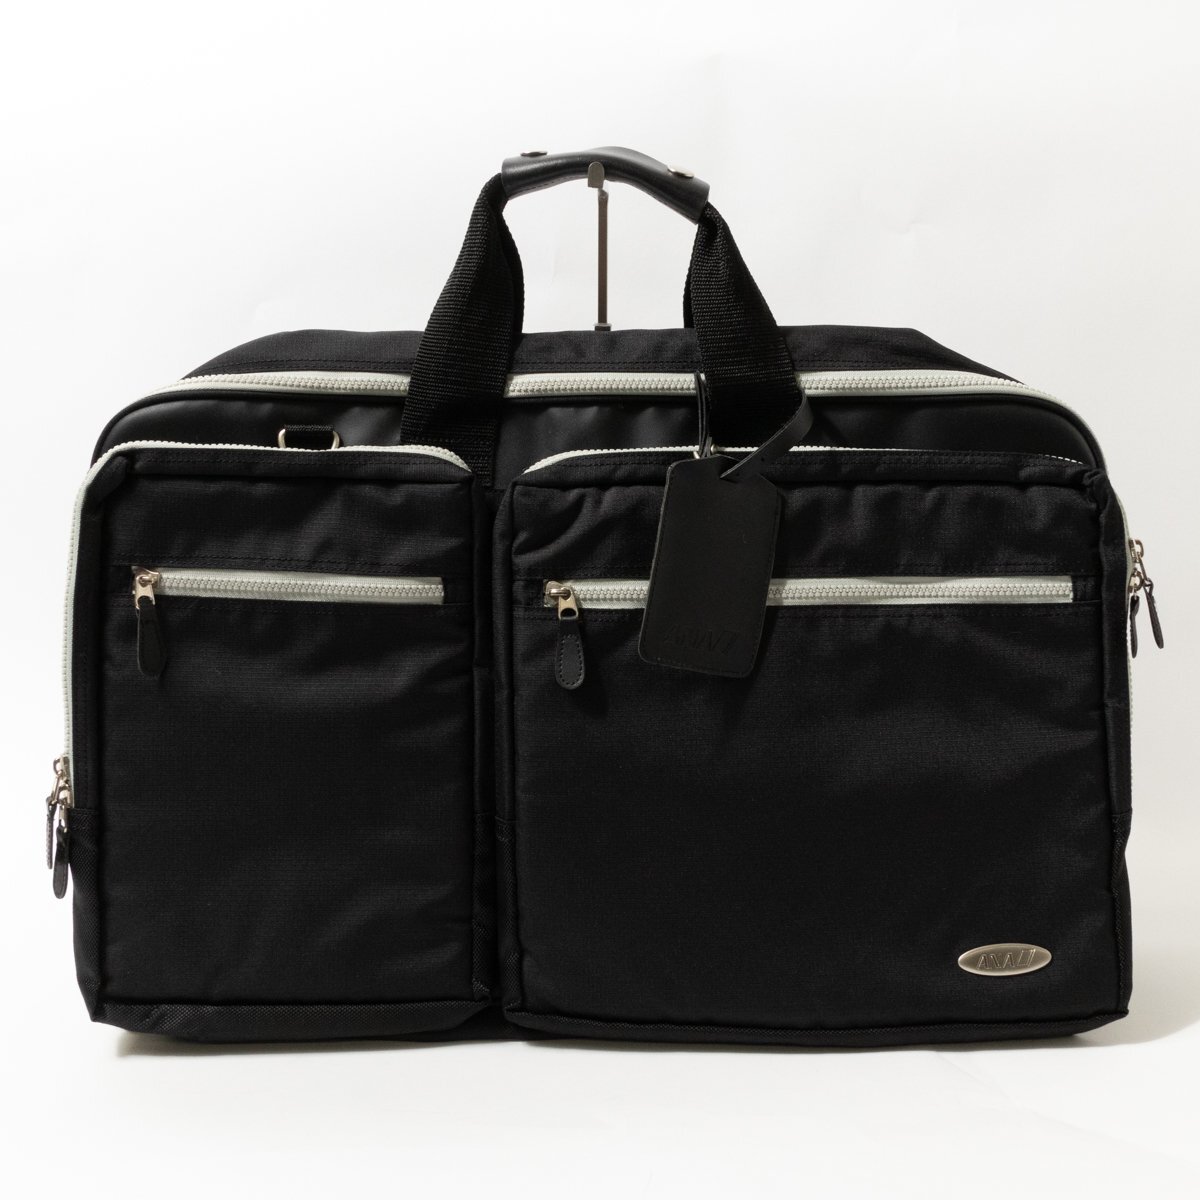 ANA アナ 全日空 ガーメントバッグ ビジネスバッグ ブラック 黒 グレー ナイロン 収納多数 ハンガー付き メンズ 手さげ ビジネス bag 鞄の画像1